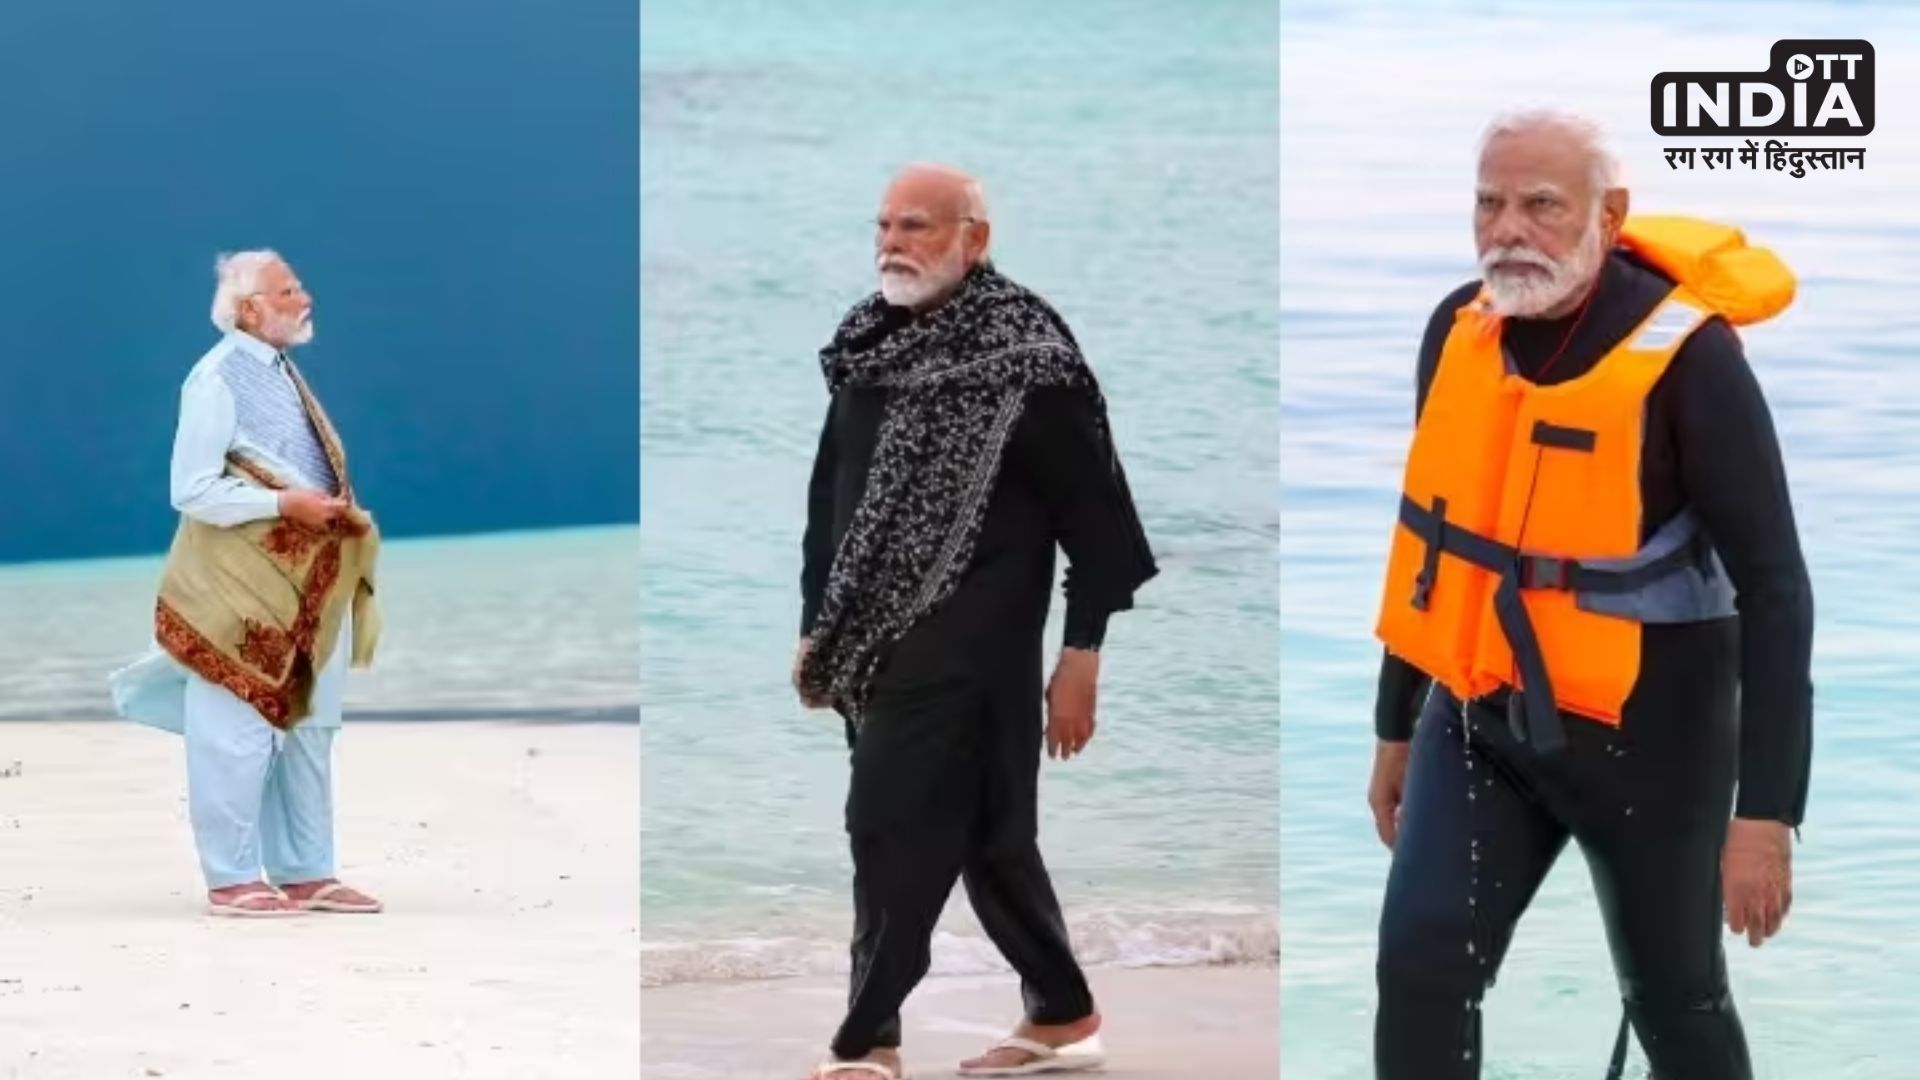 PM Modi Lakshadweep Photos : जो लोग स्नॉर्कलिंग करना चाहते है उनकी लिस्ट में होना चाहिए लक्ष्यदीप : पीएम मोदी